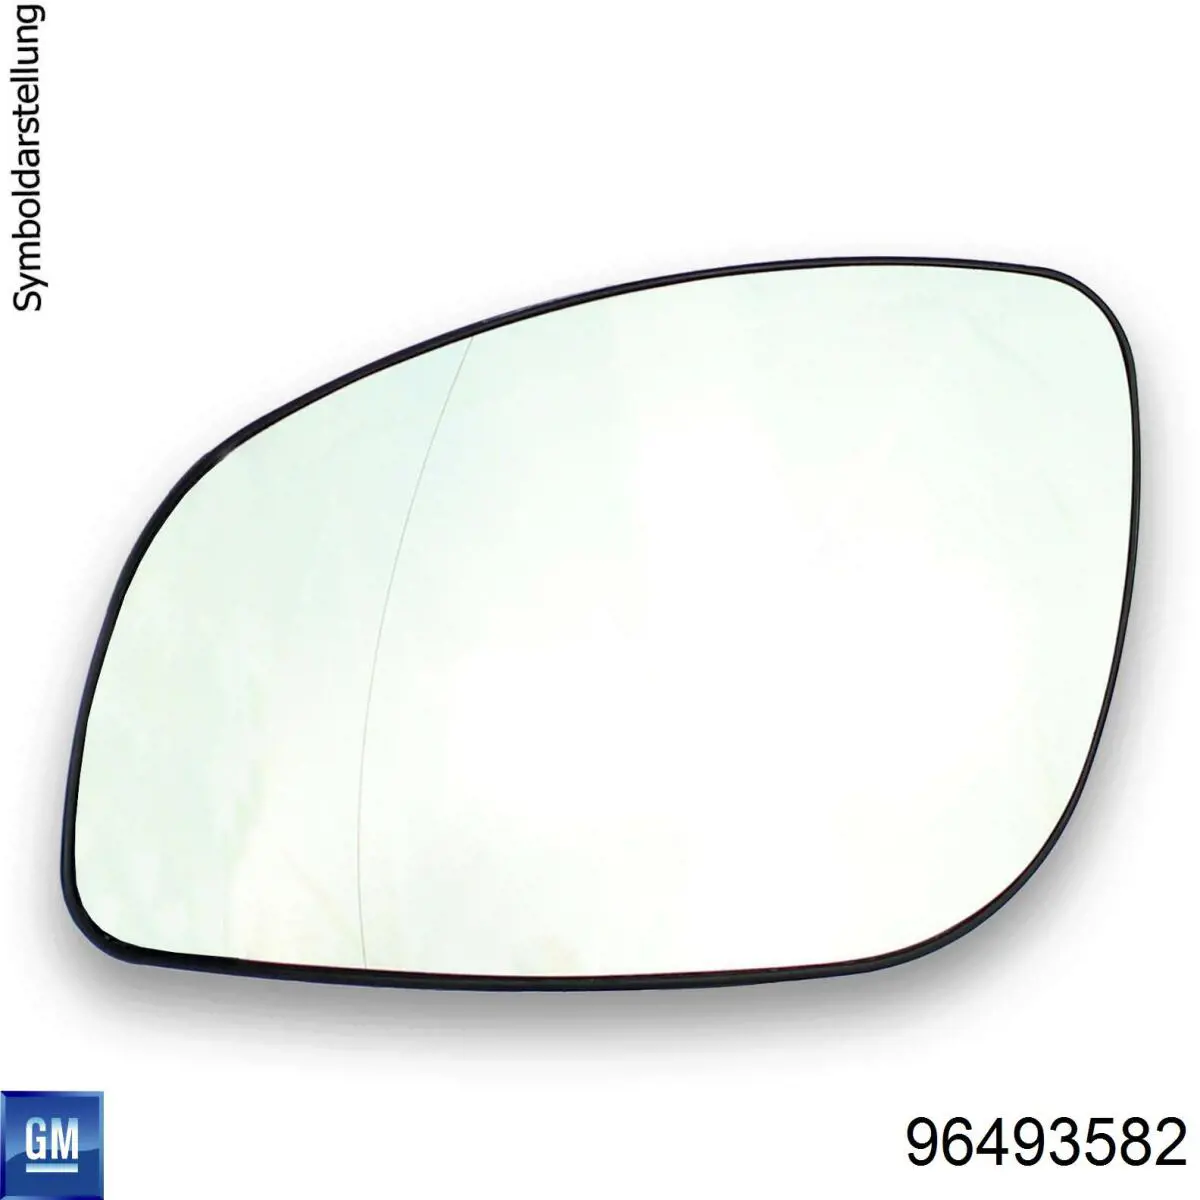 Зеркальный элемент зеркала заднего вида правого на Шевроле Авео (Chevrolet Aveo) T200 седан